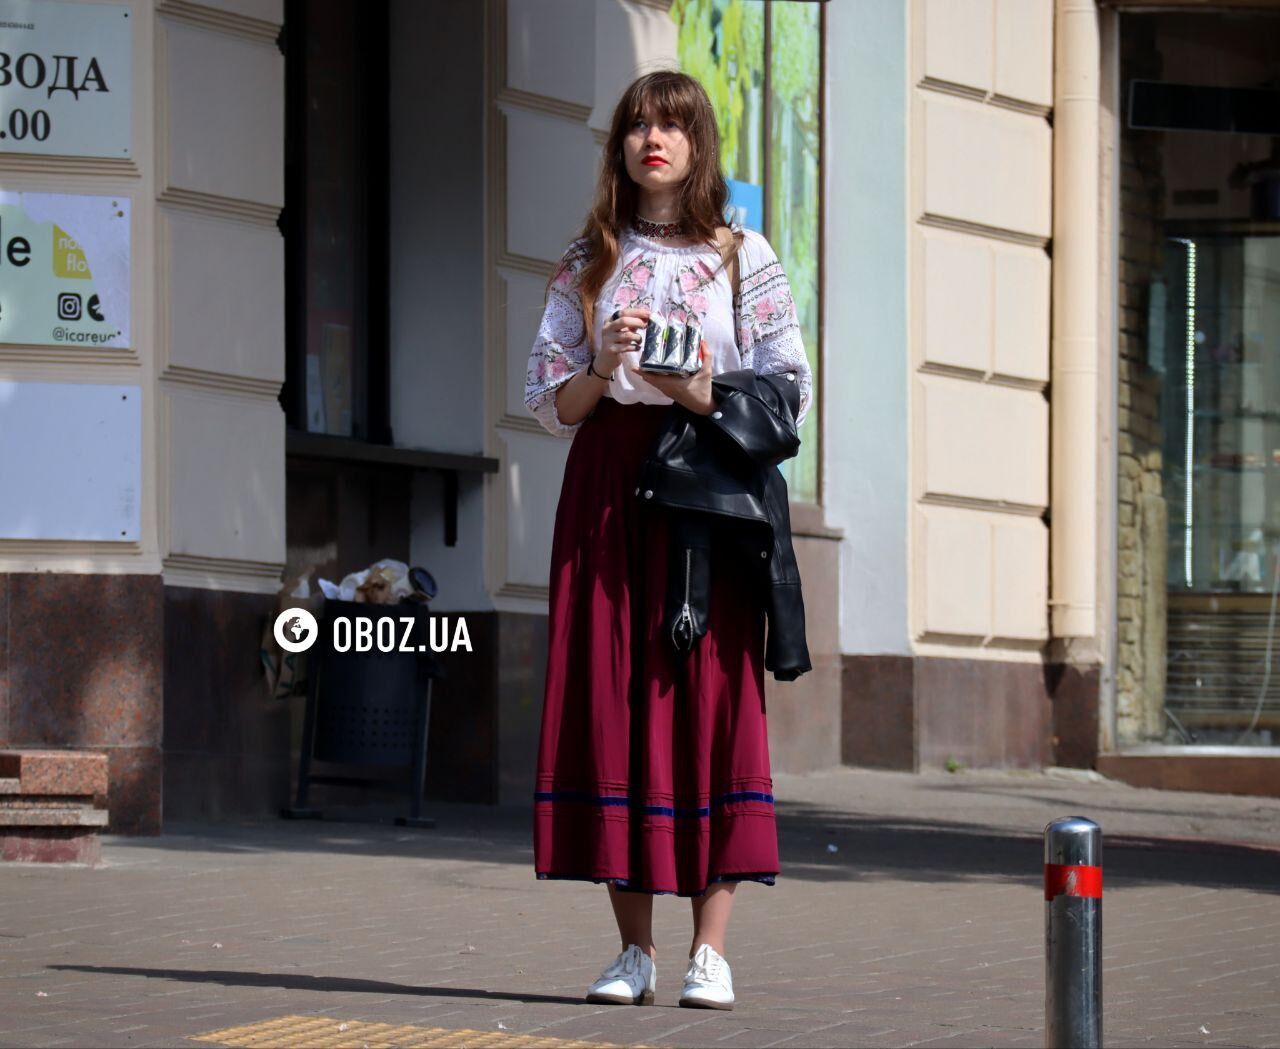 Важная составляющая самоидентичности: улицы Киева заполонили украинцы в вышиванках. Фоторепортаж